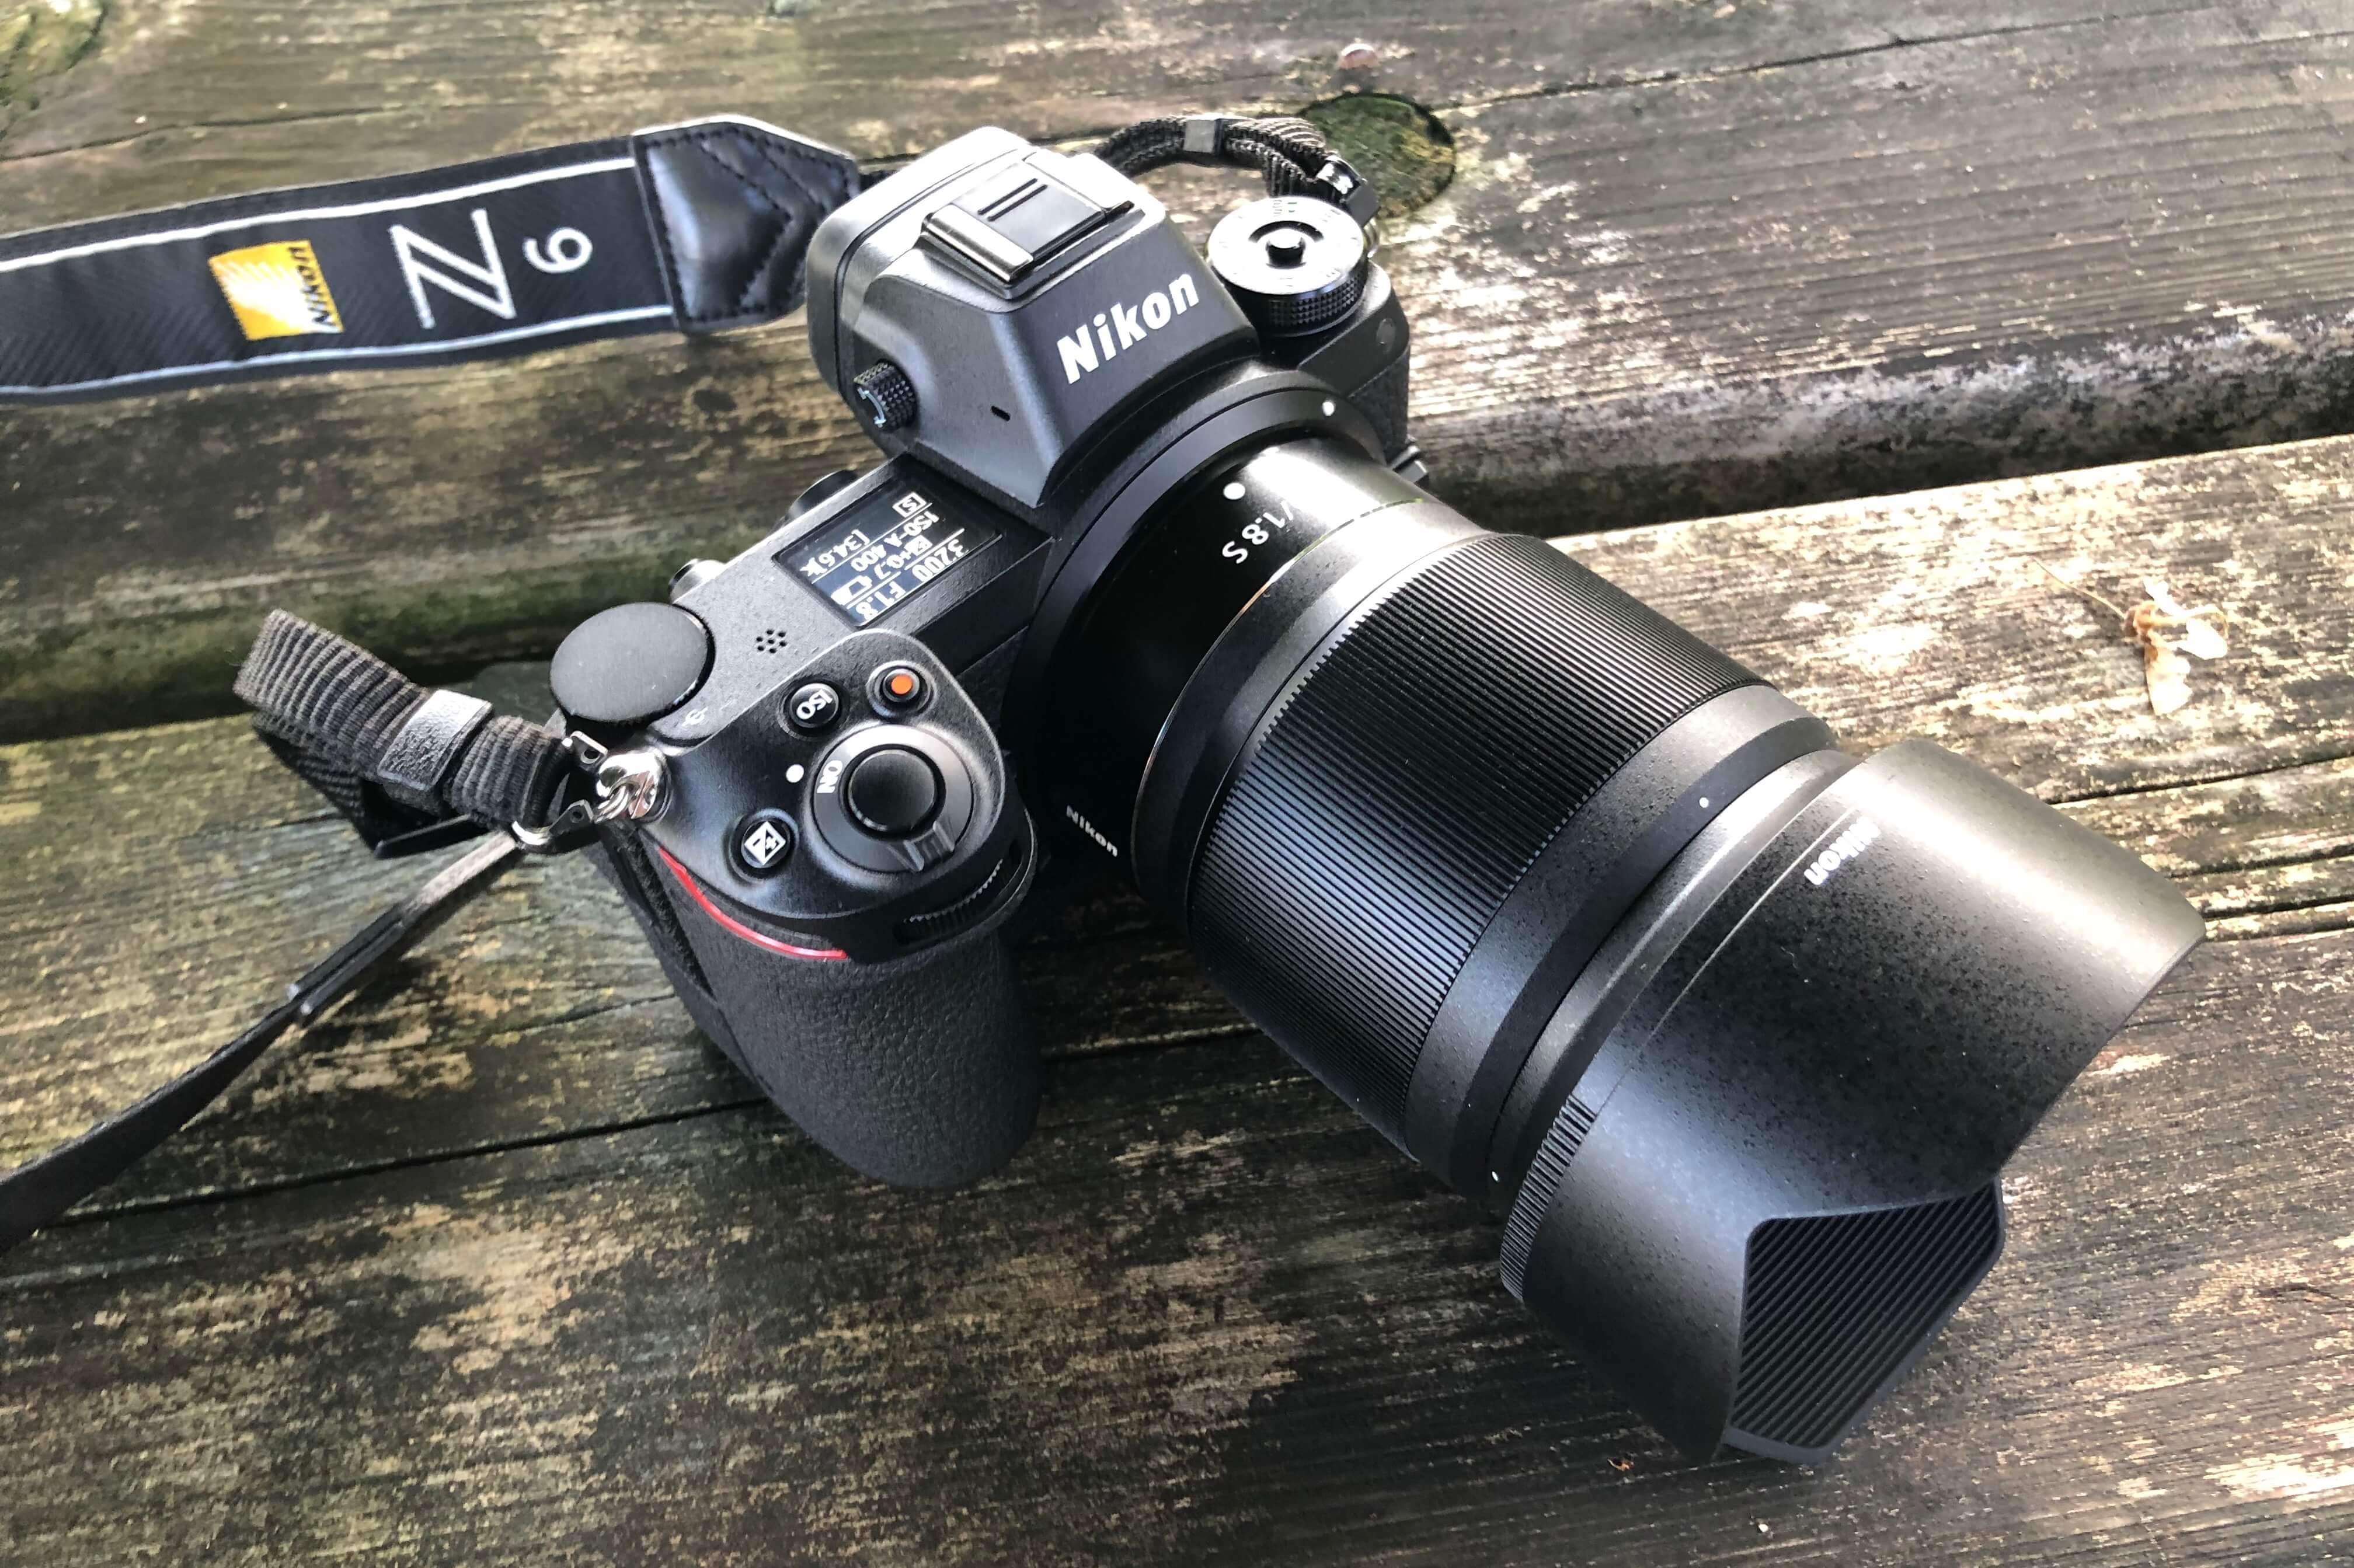 アウトレット大セール Nikon 単焦点レンズ Z 50mm 1.8S その他